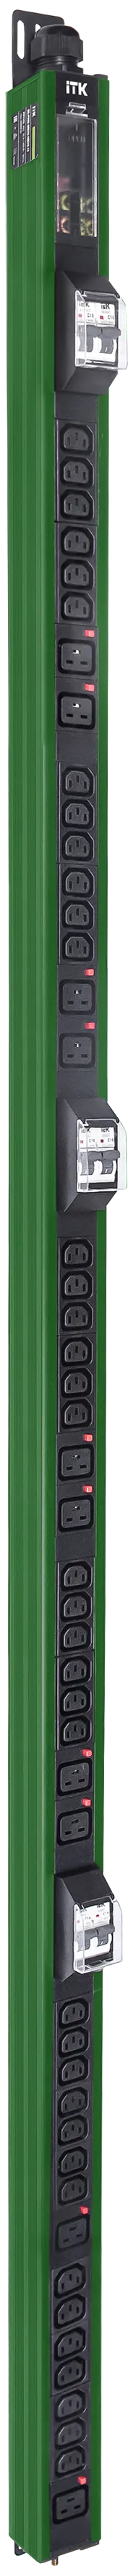 Вертикальный комбинированный блок распределения питания PDU ITK в зеленом корпусе включает в себя розетки двух типов: 38 розеток C13 и 10 розеток C19 – что позволяет подключать с их помощью различное оборудование. PDU ITK изготавливается из высококачественных термостойких материалов и пластмасс, оснащается 6 метровым кабелем электропитания с вилкой промышленного назначения IEC60309. PDU ITK прекрасно справляется с задачей по электроснабжению сетевого оборудования в шкафах и стойках, а также с требованием защиты от токов короткого замыкания и перенапряжения. PDU ITK соответствует российским и международным стандартам качества и устанавливается с помощью кронштейнов, при этом положение кронштейнов можно менять, либо безынструментальным методом при помощи монтажных штифтов. 